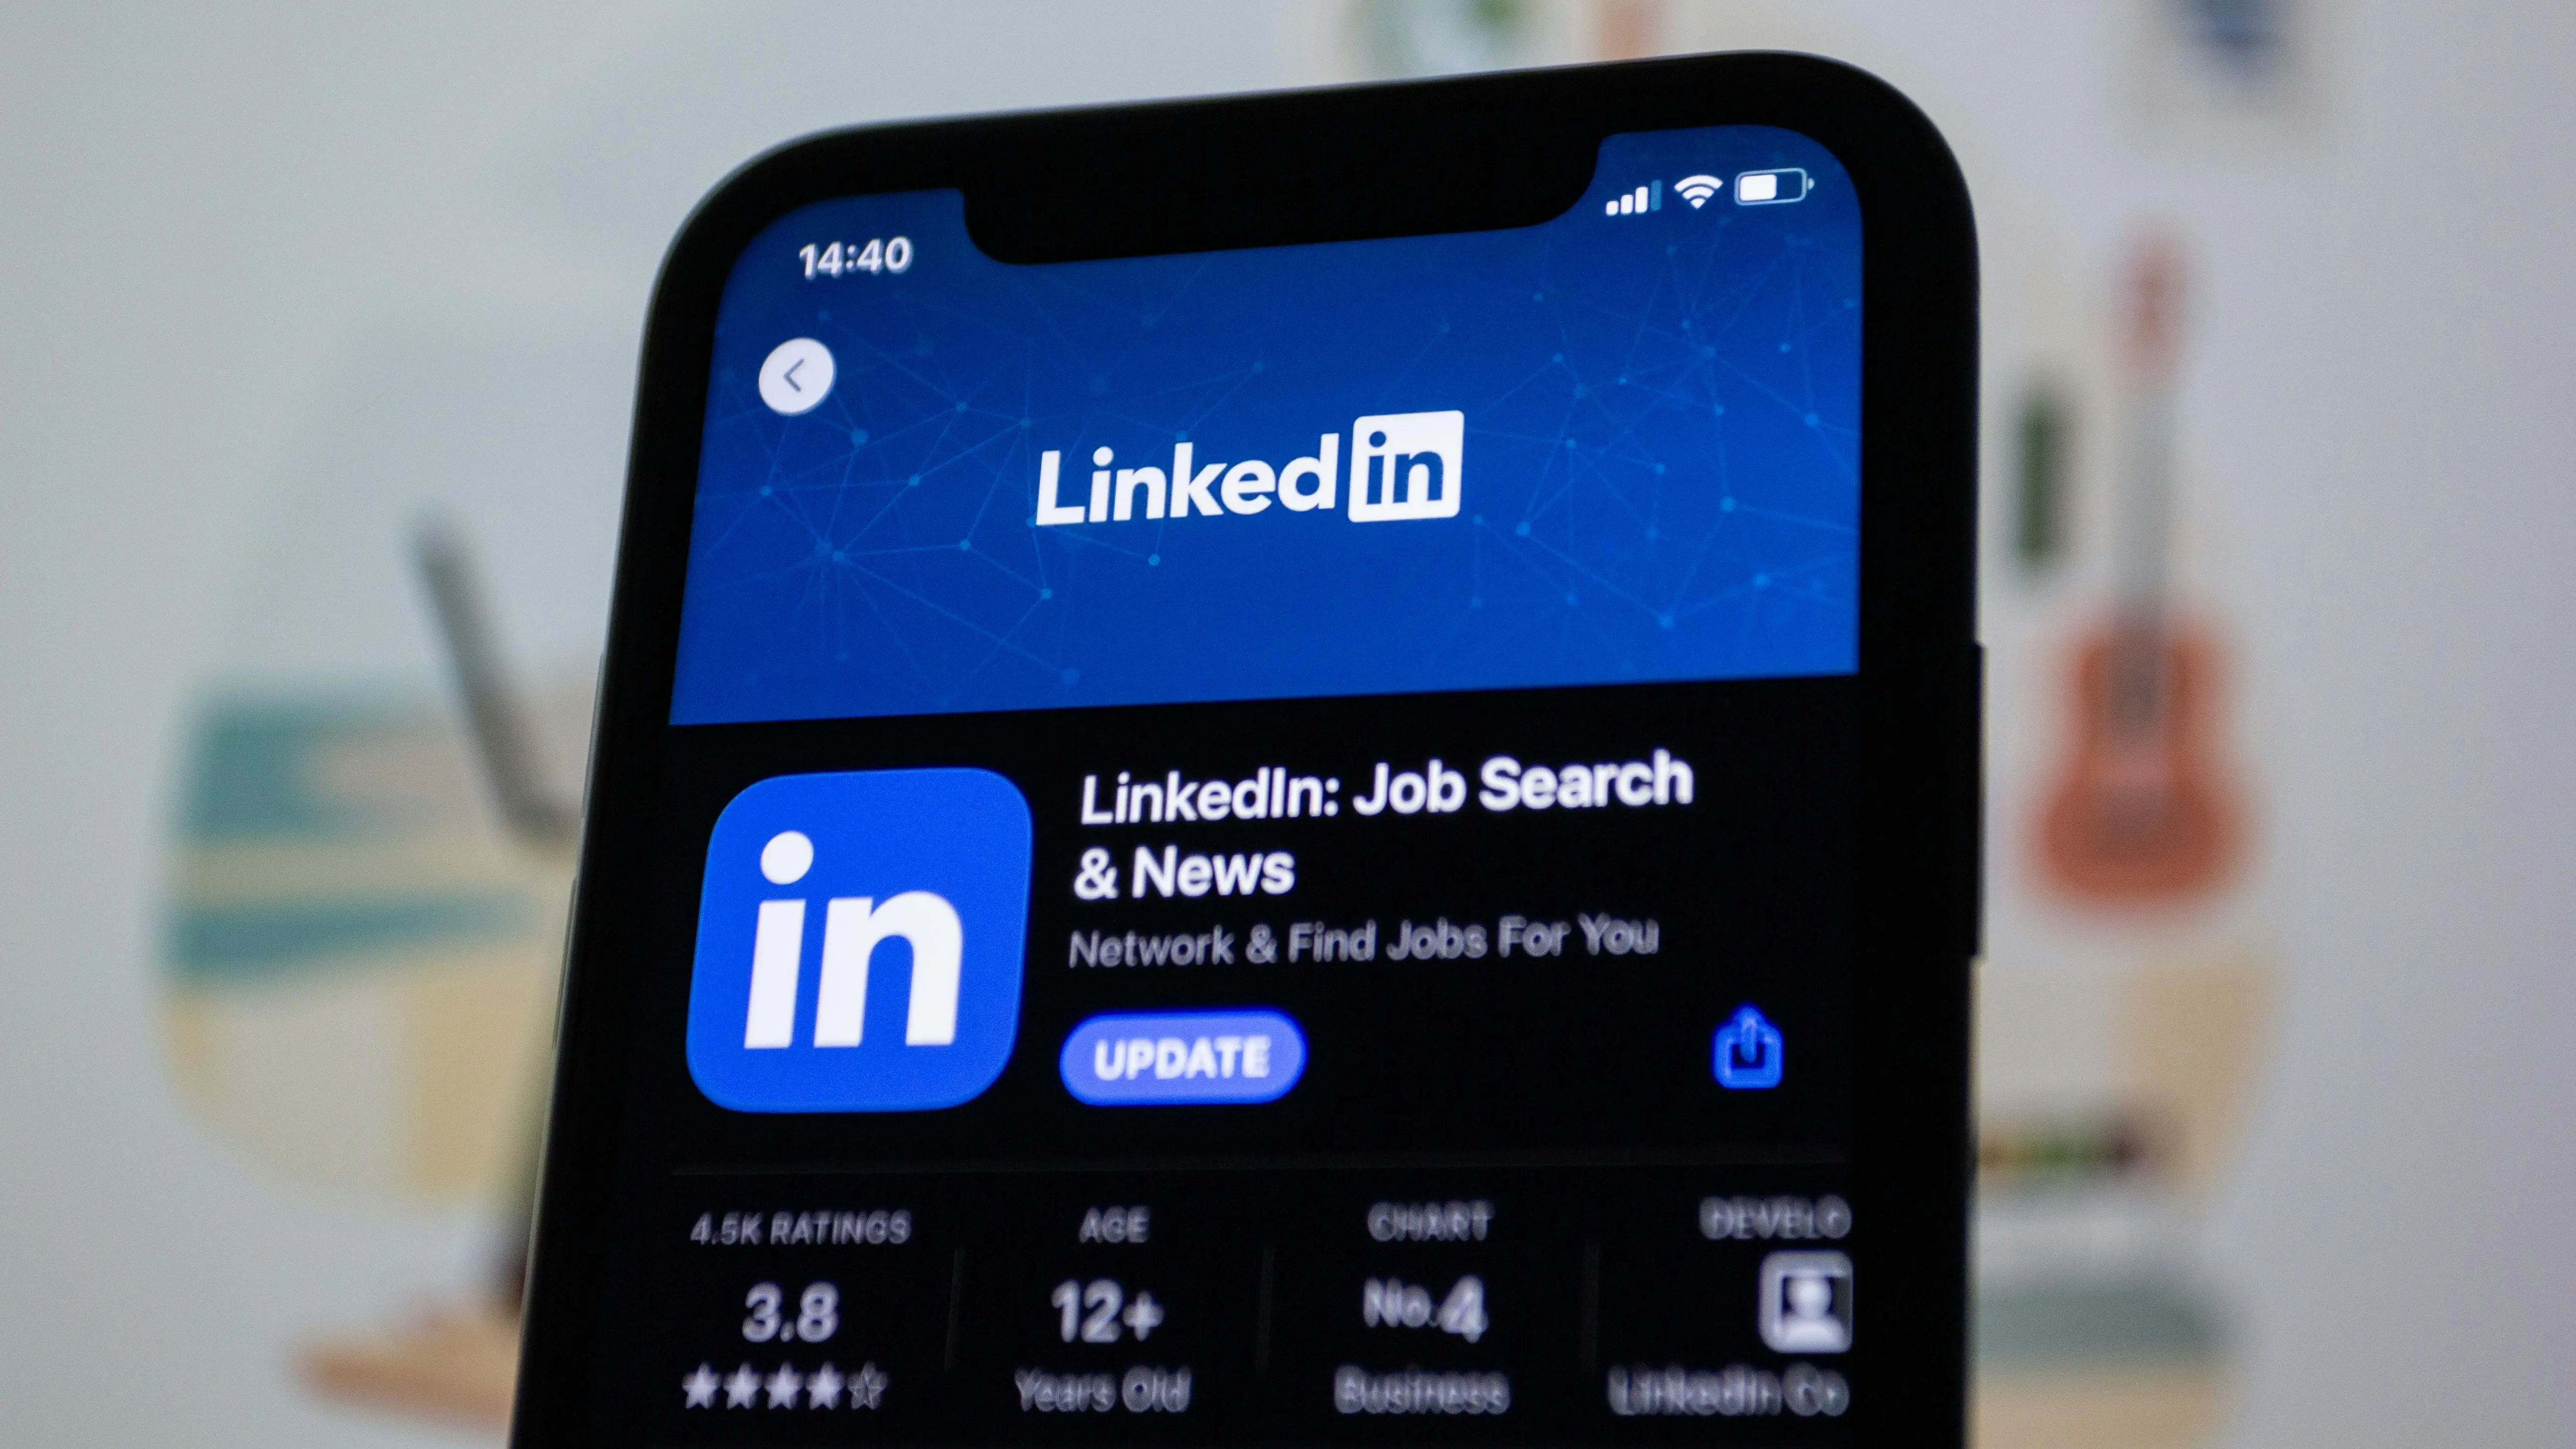 Come creare un profilo LinkedIn efficace per trovare lavoro